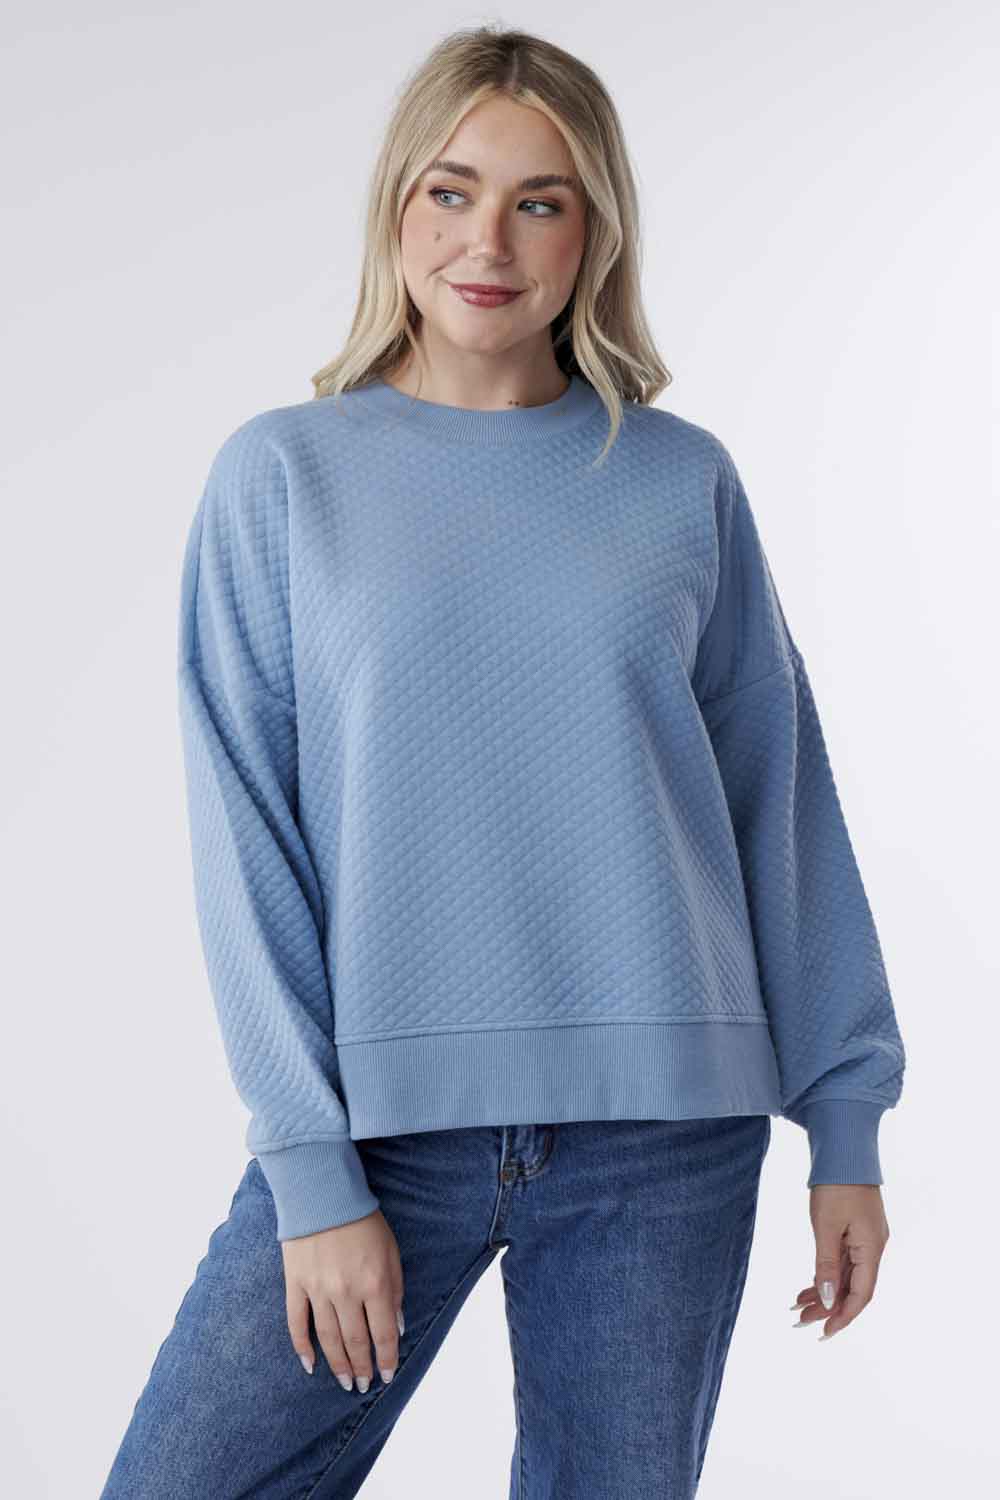 Classyloft Gabriella Jacquard Knit Sweater Top-Light Blue L